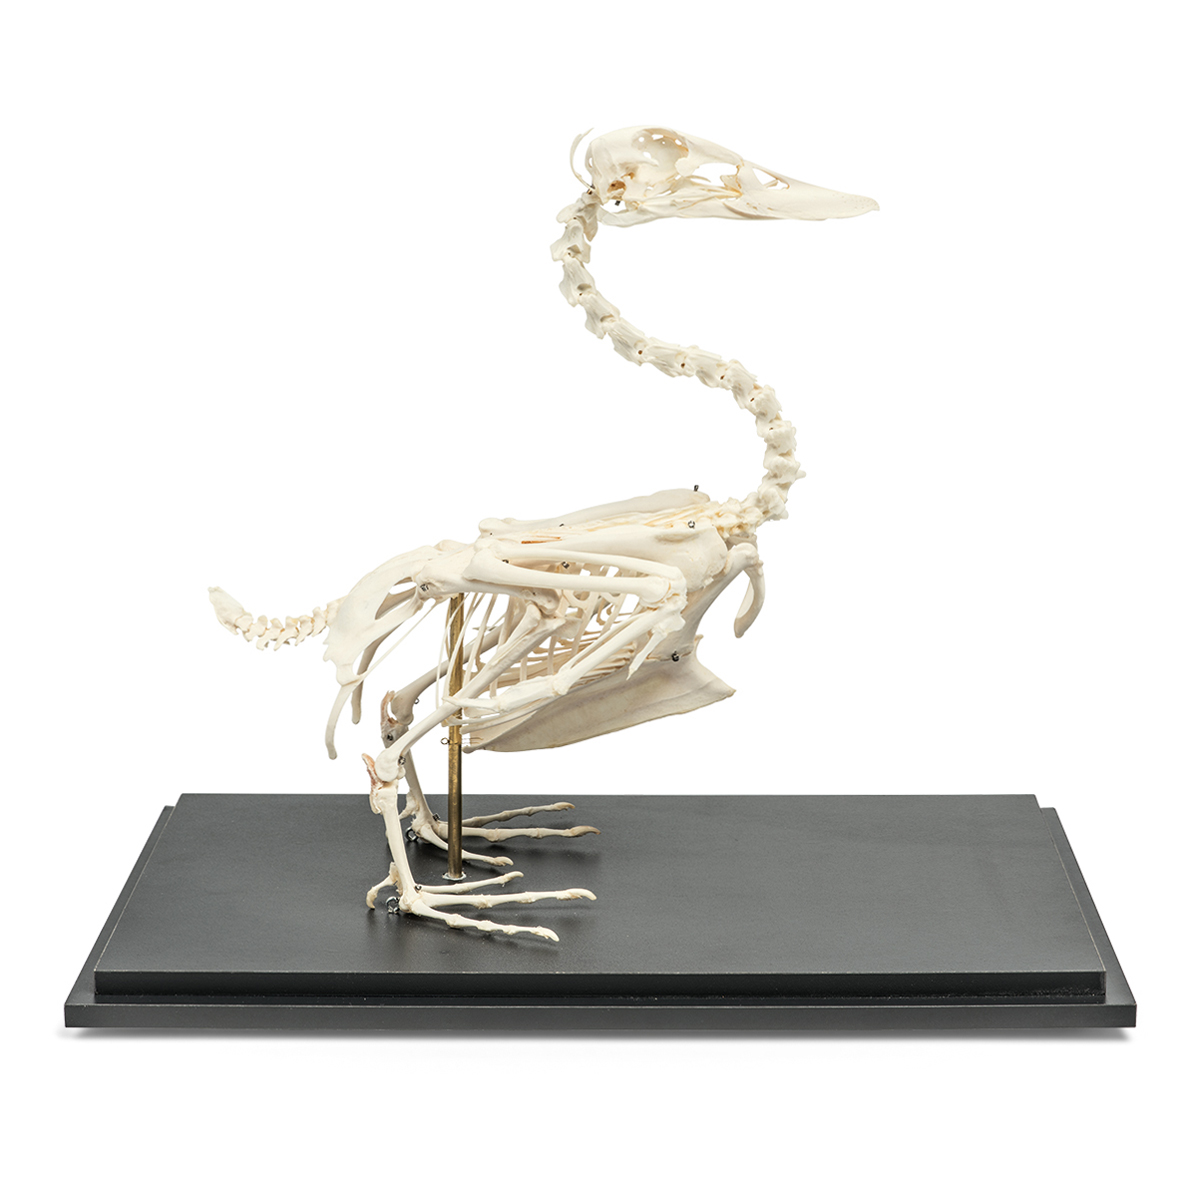 오리 골격 모형 Duck Skeleton (Anas platyrhynchos domestica) Specimen T300351 [1020979]